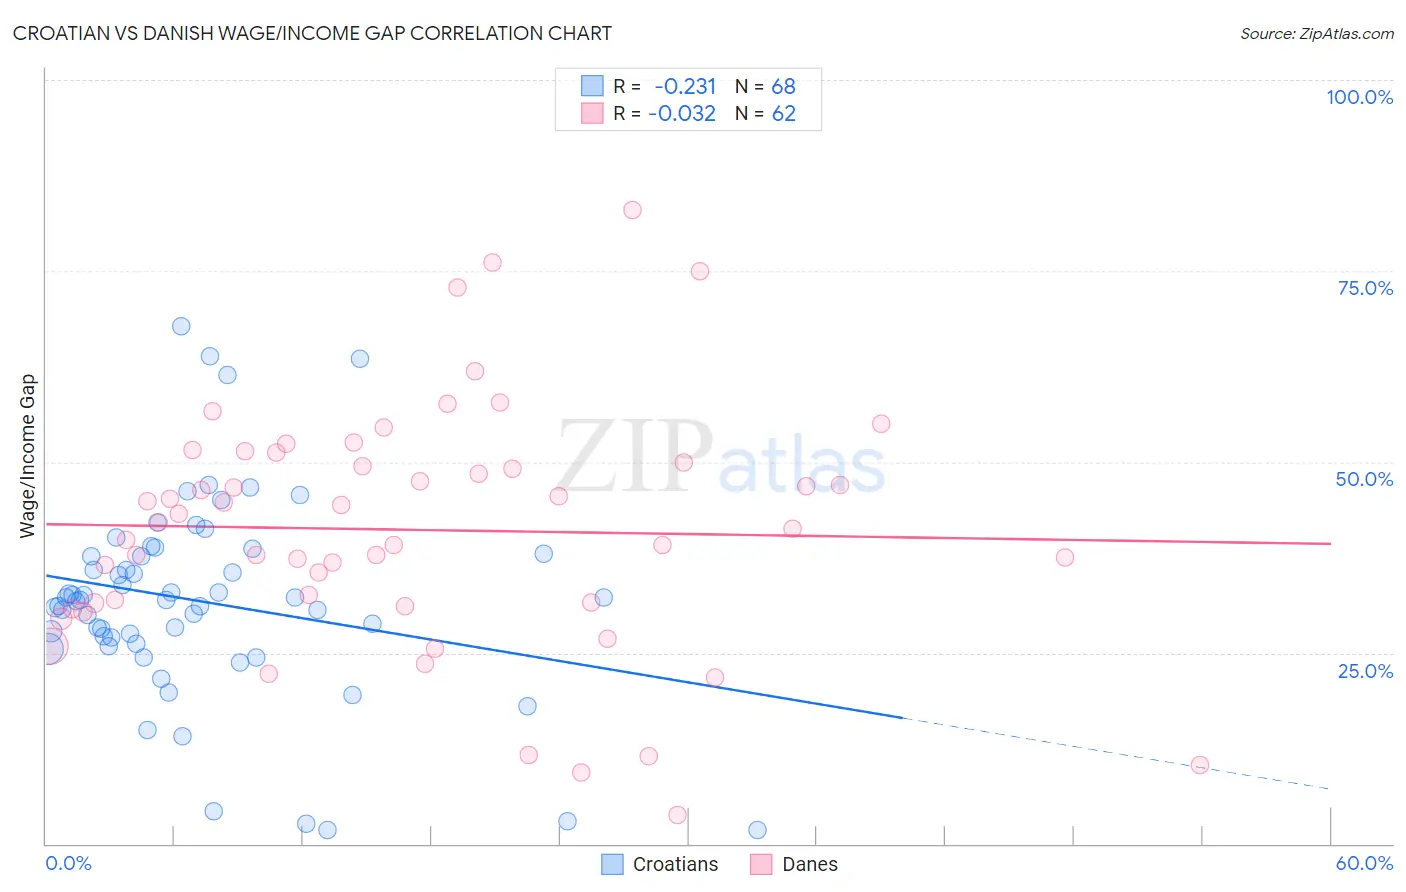 Croatian vs Danish Wage/Income Gap